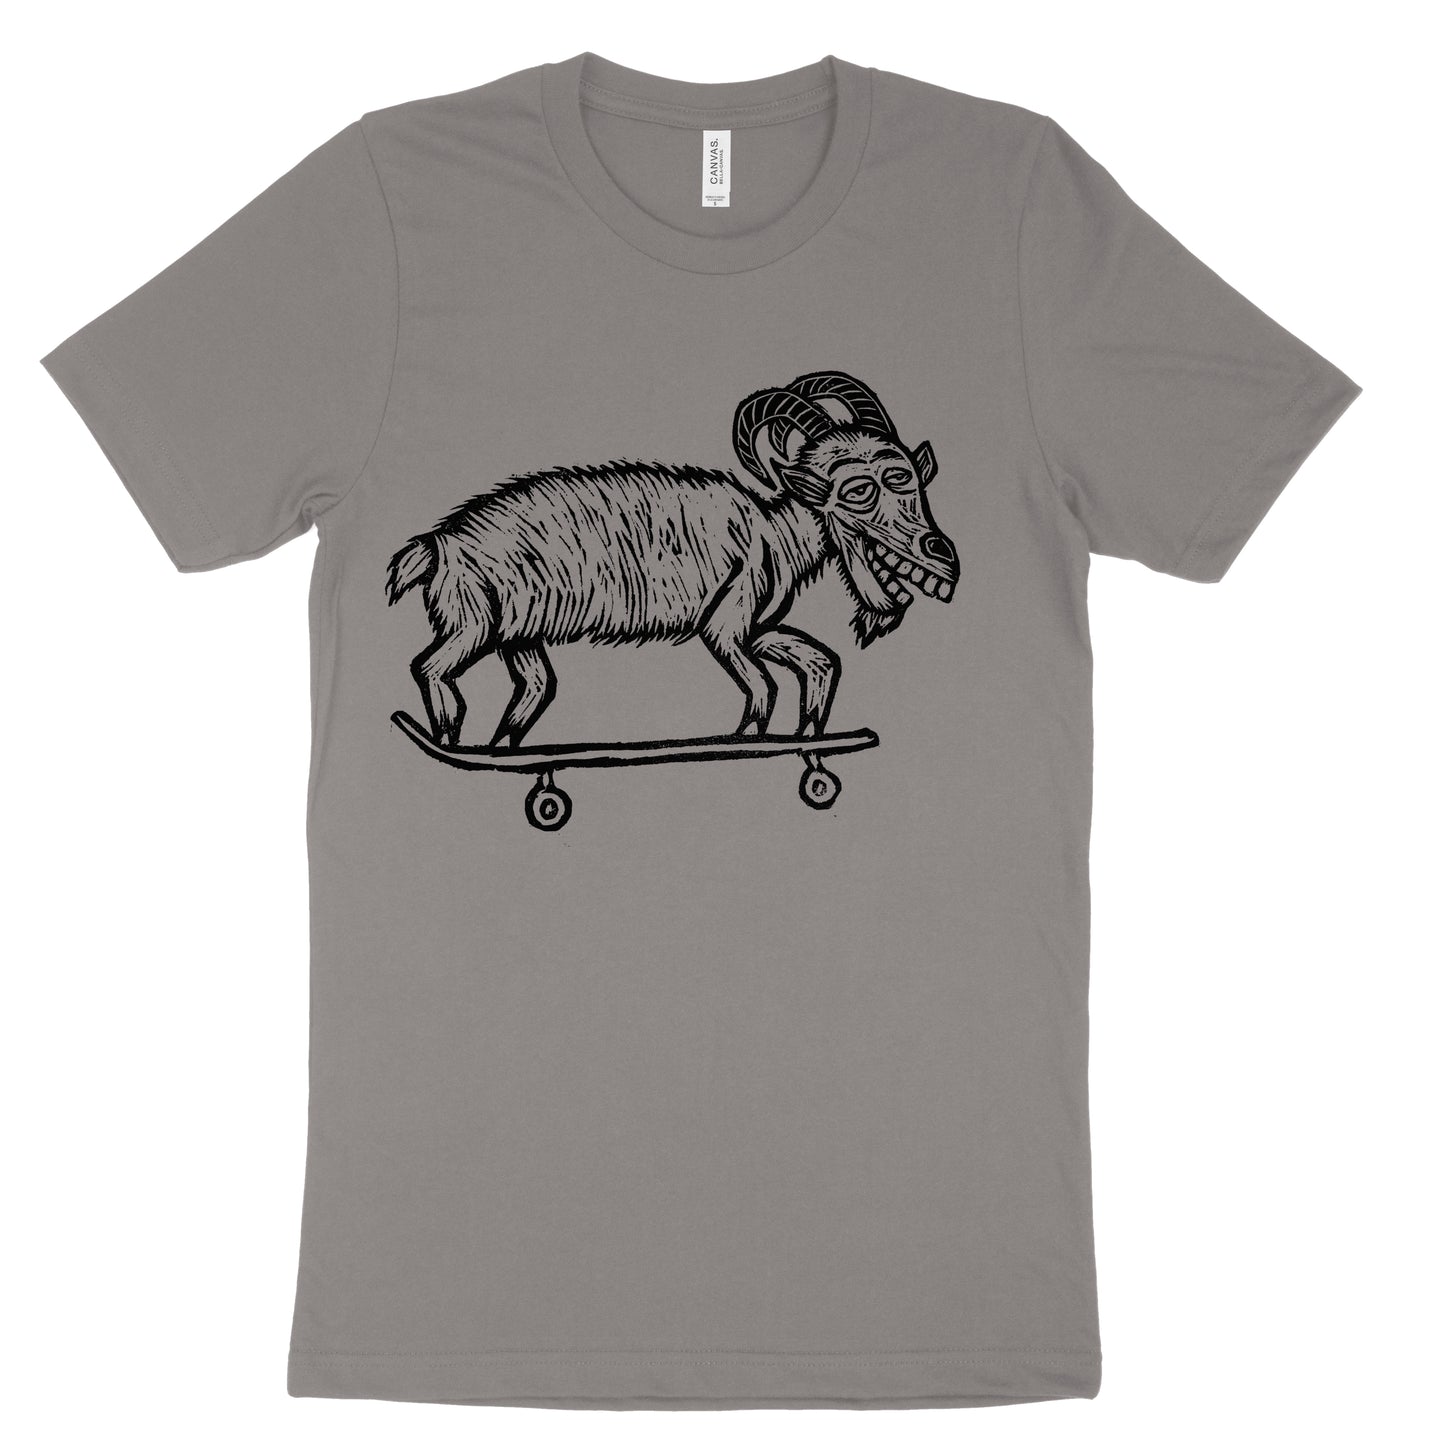 Skate Goat Woodcut Printed T-Shirt